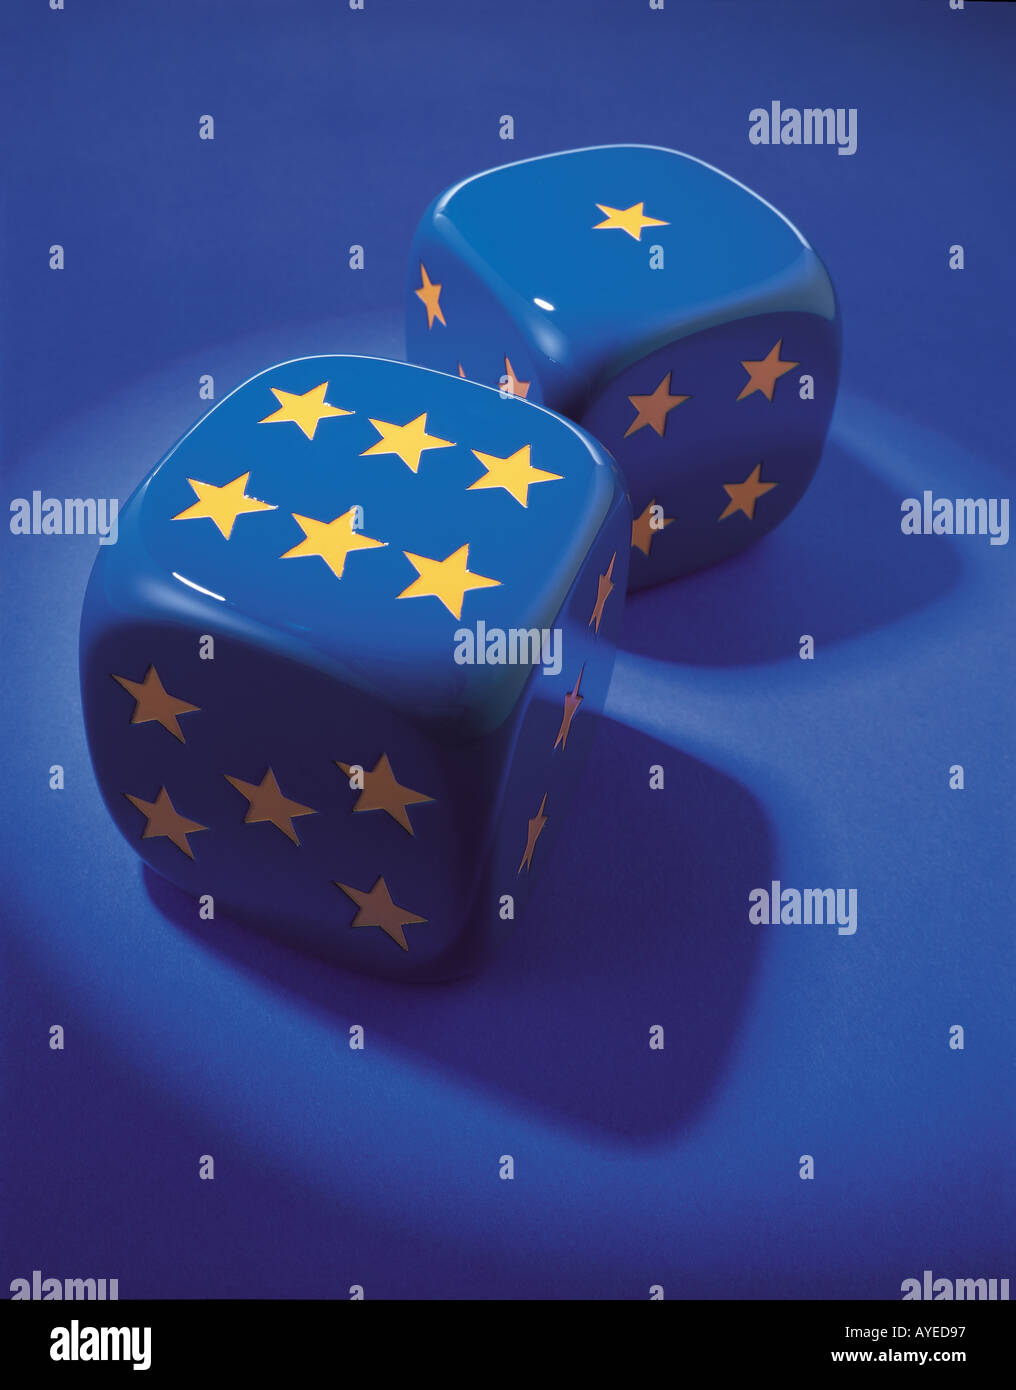 zwei blaue Würfel mit Sternen für Zahlen in gold Farbe wie die Europäische Union flag Stockfoto